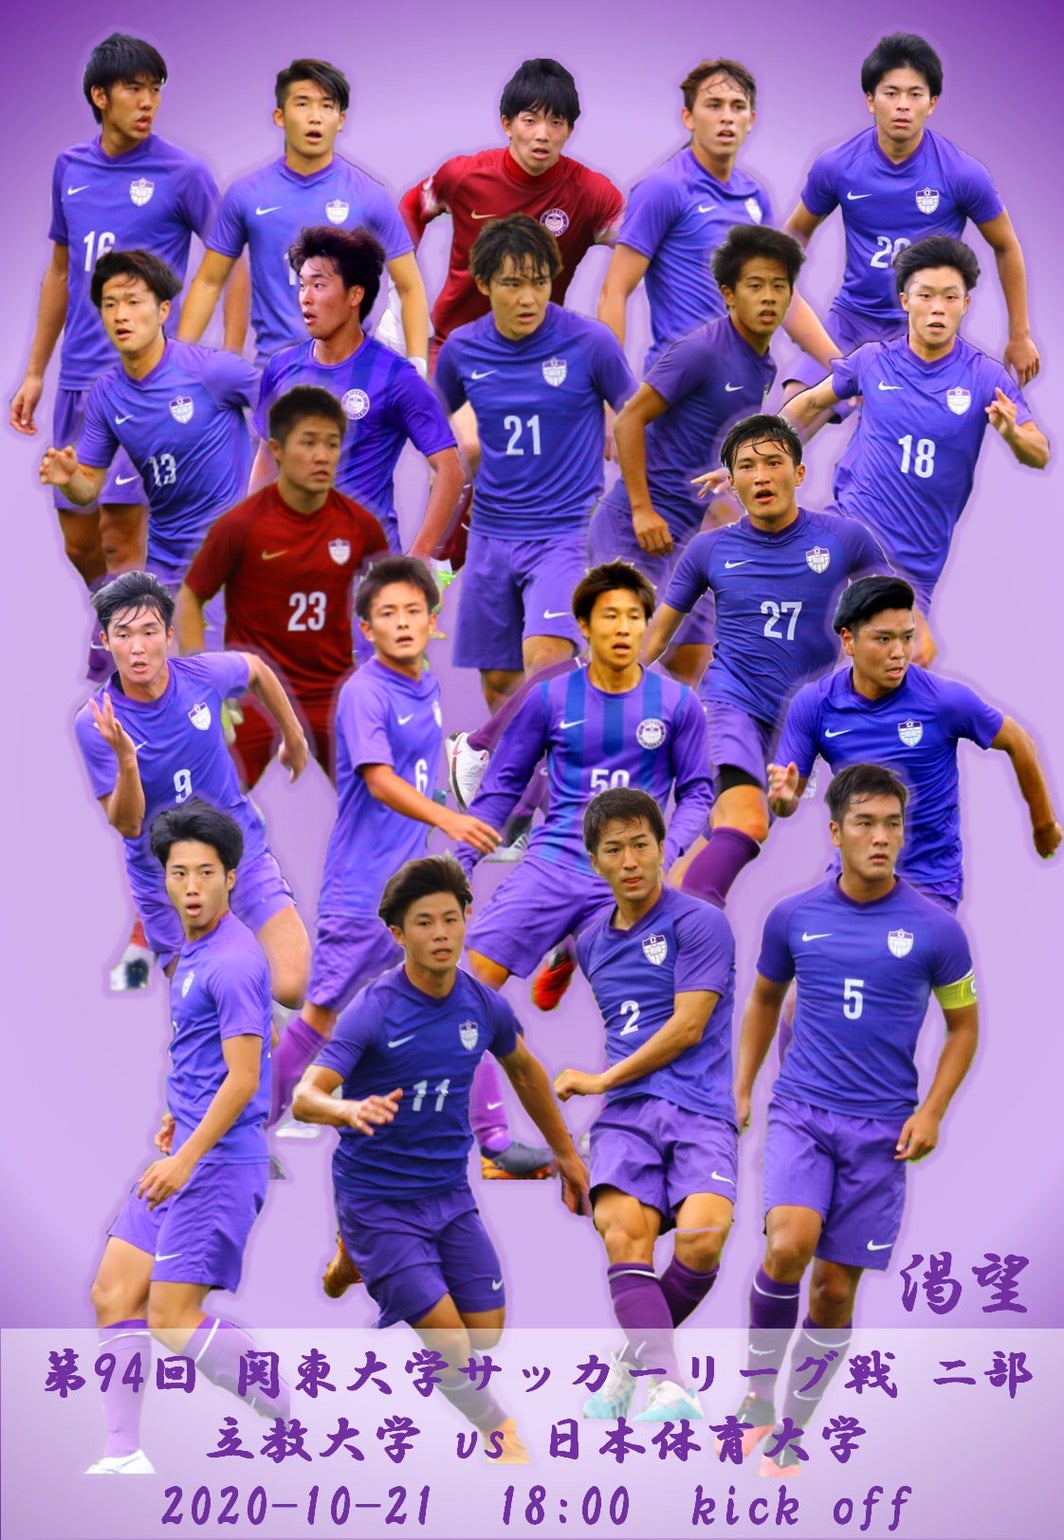 日本大学サッカー部 ユニフォーム - ウェア